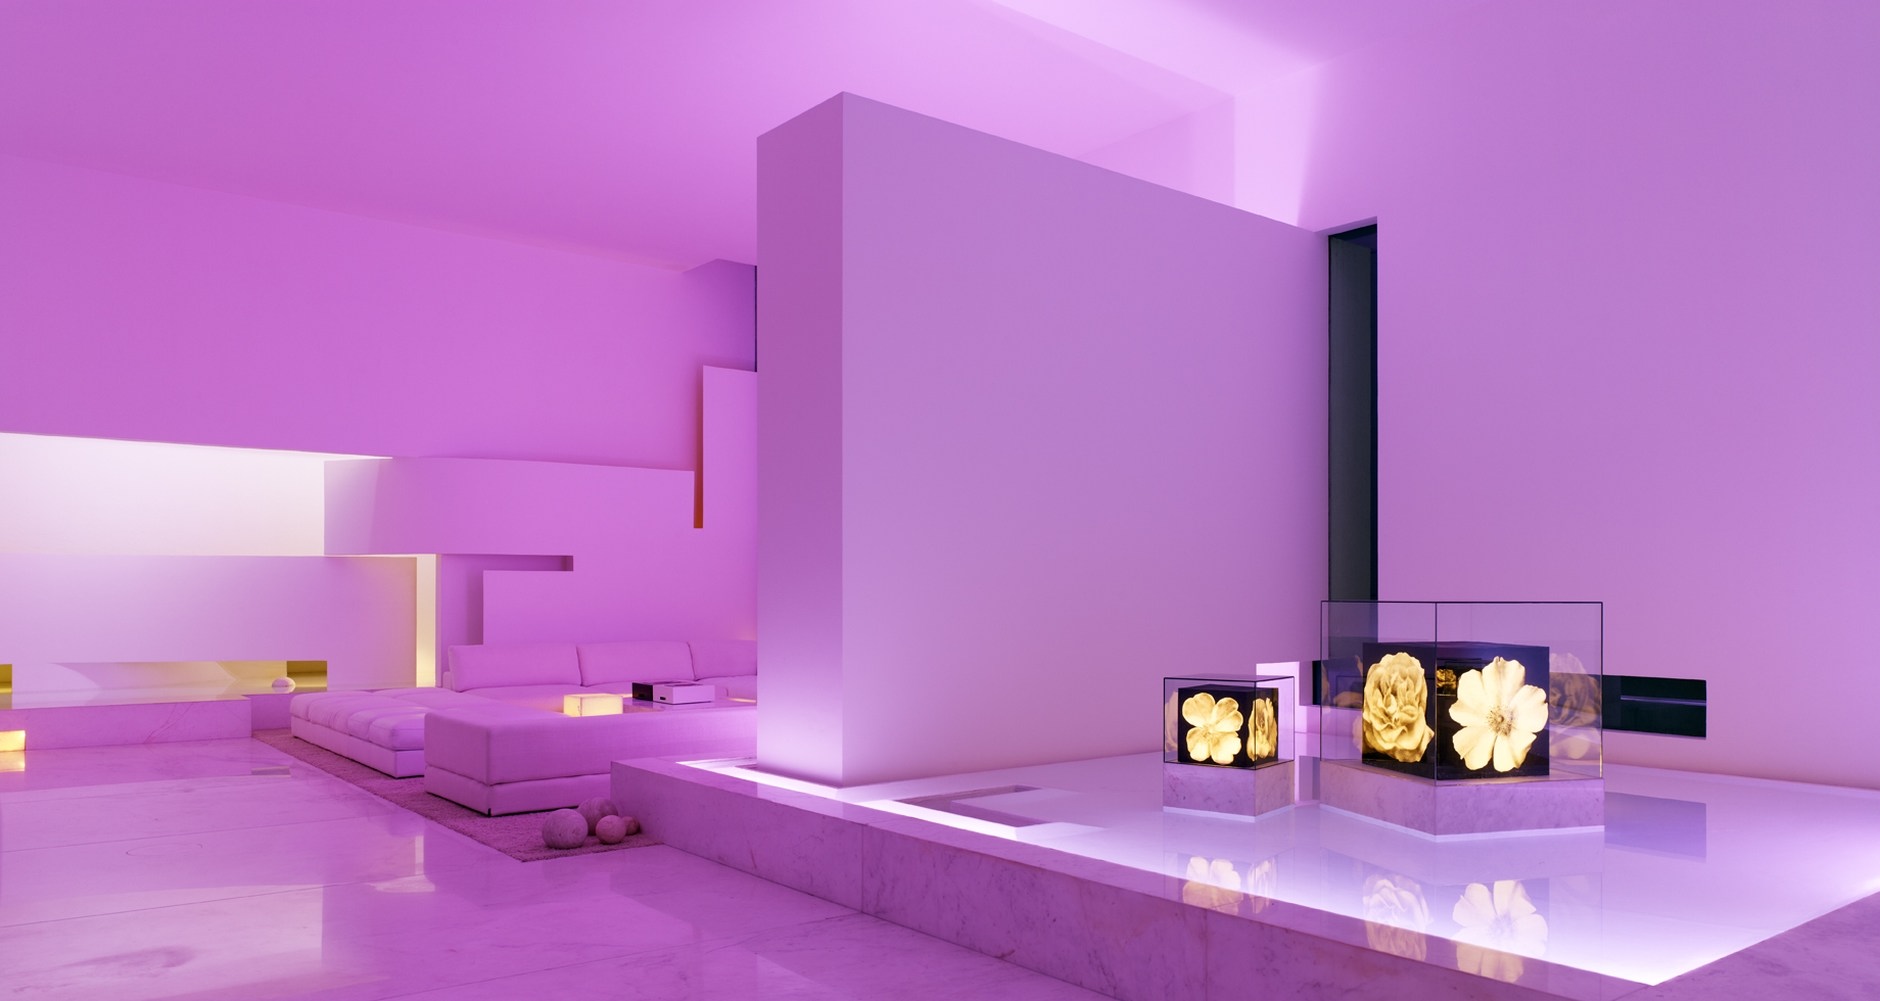 Розовый свет купить. Комната с фиолетовой подсветкой. Розовая подсветка в интерьере. Комнаты в сиреневом цвете Минимализм. Комната с розовой подсветкой.